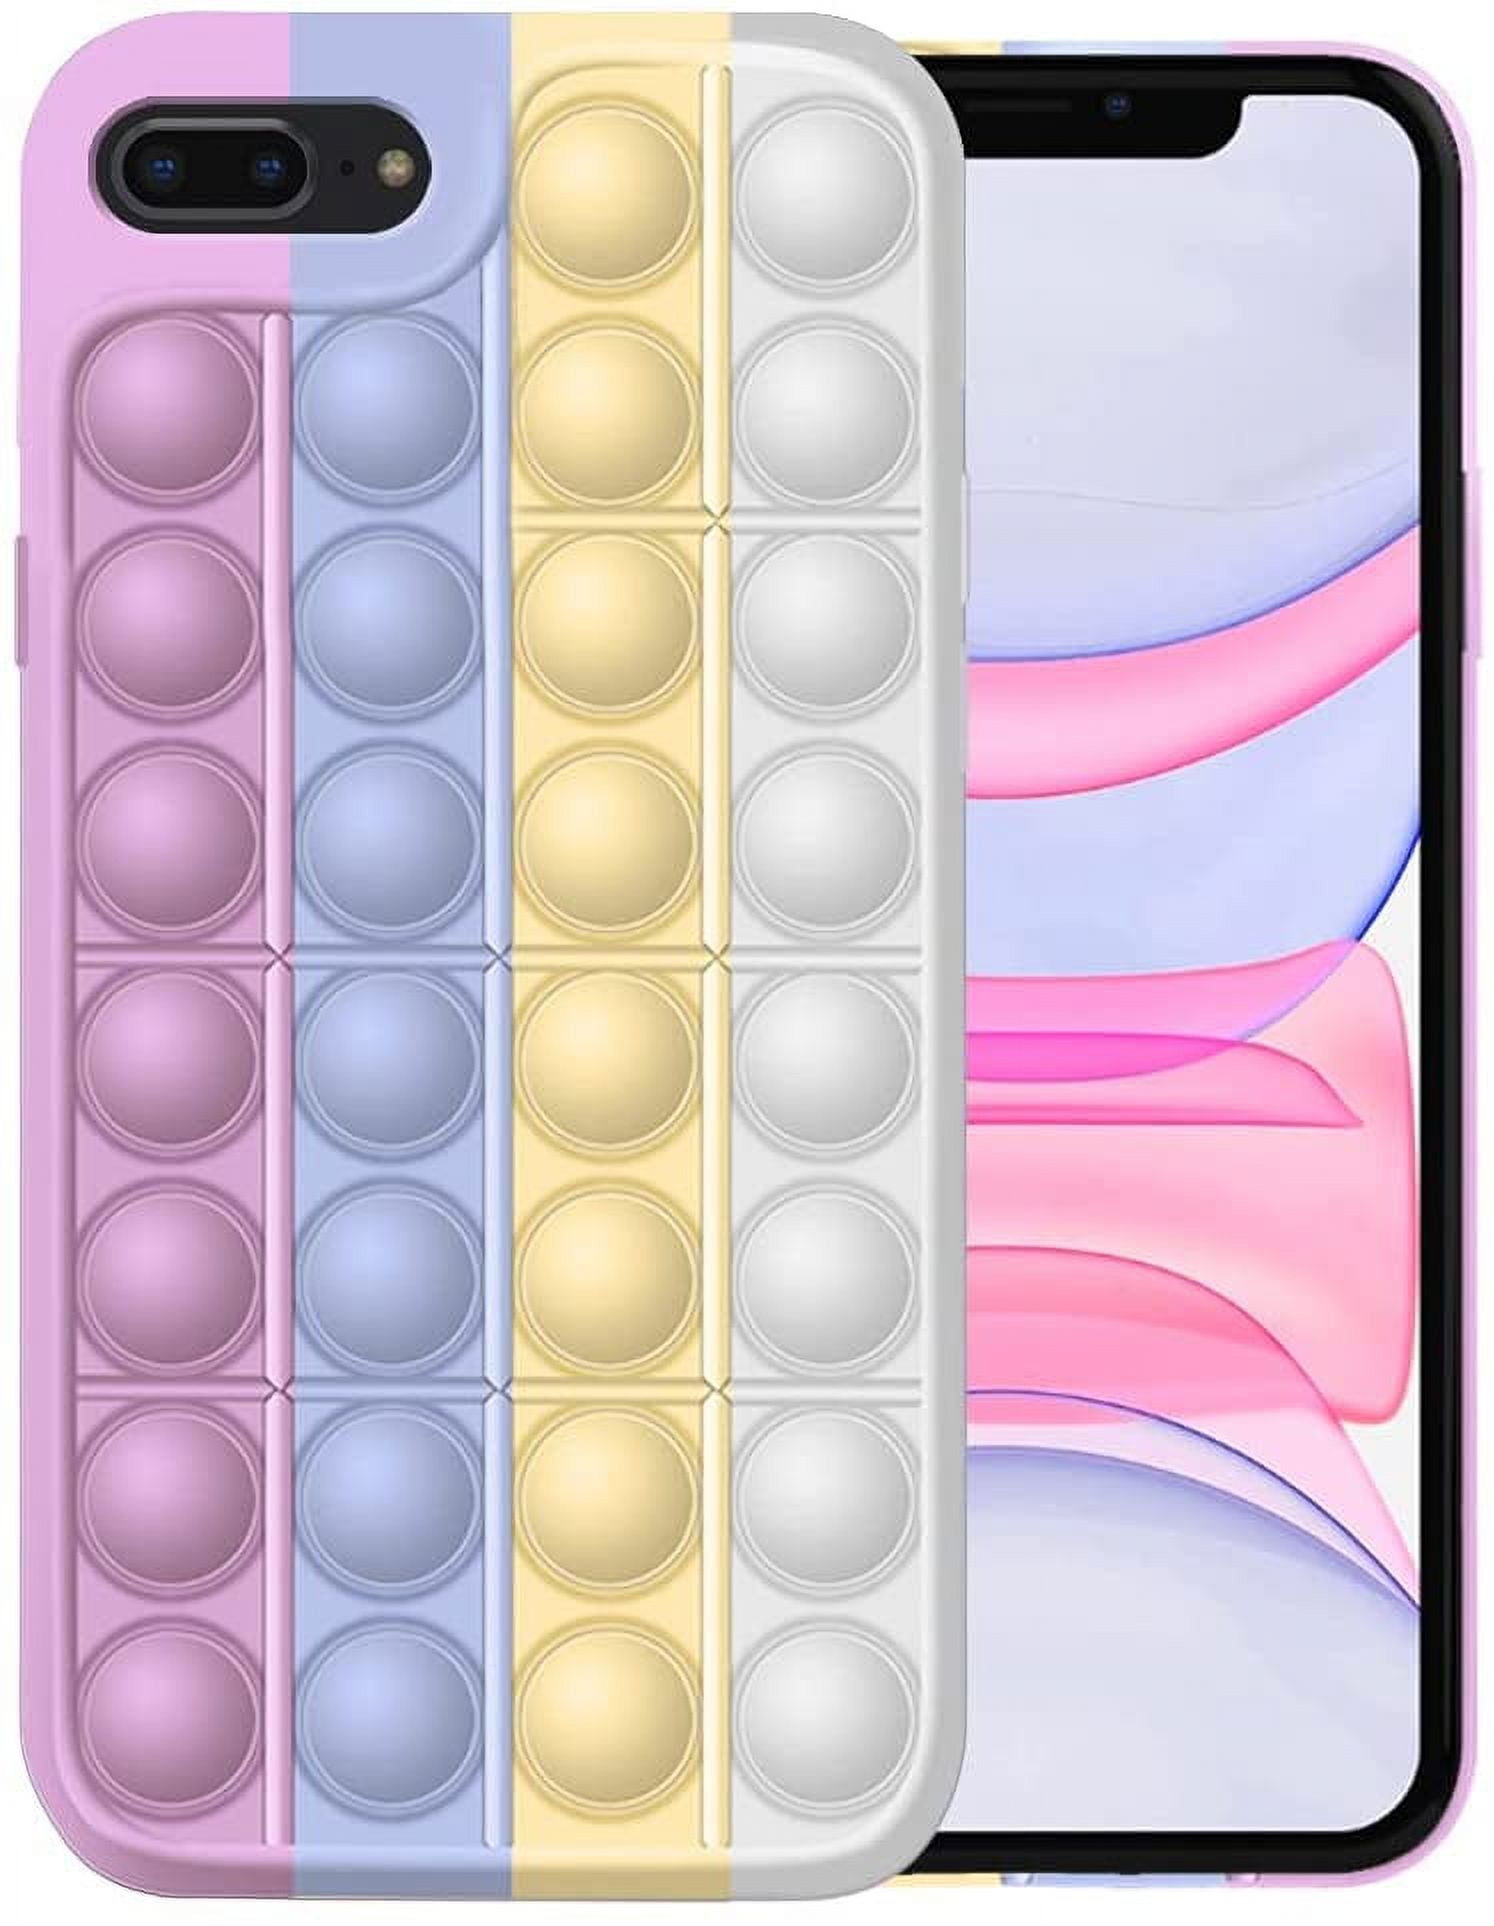 Fidget Toys Phone Case,Push Pop Bubble Protecive Cute Cover for iPhone 7 / 8  Mini Sensory Fidgets Toy Fidget Popitz Anxiety Relief Autism Phone Case -  Pink White